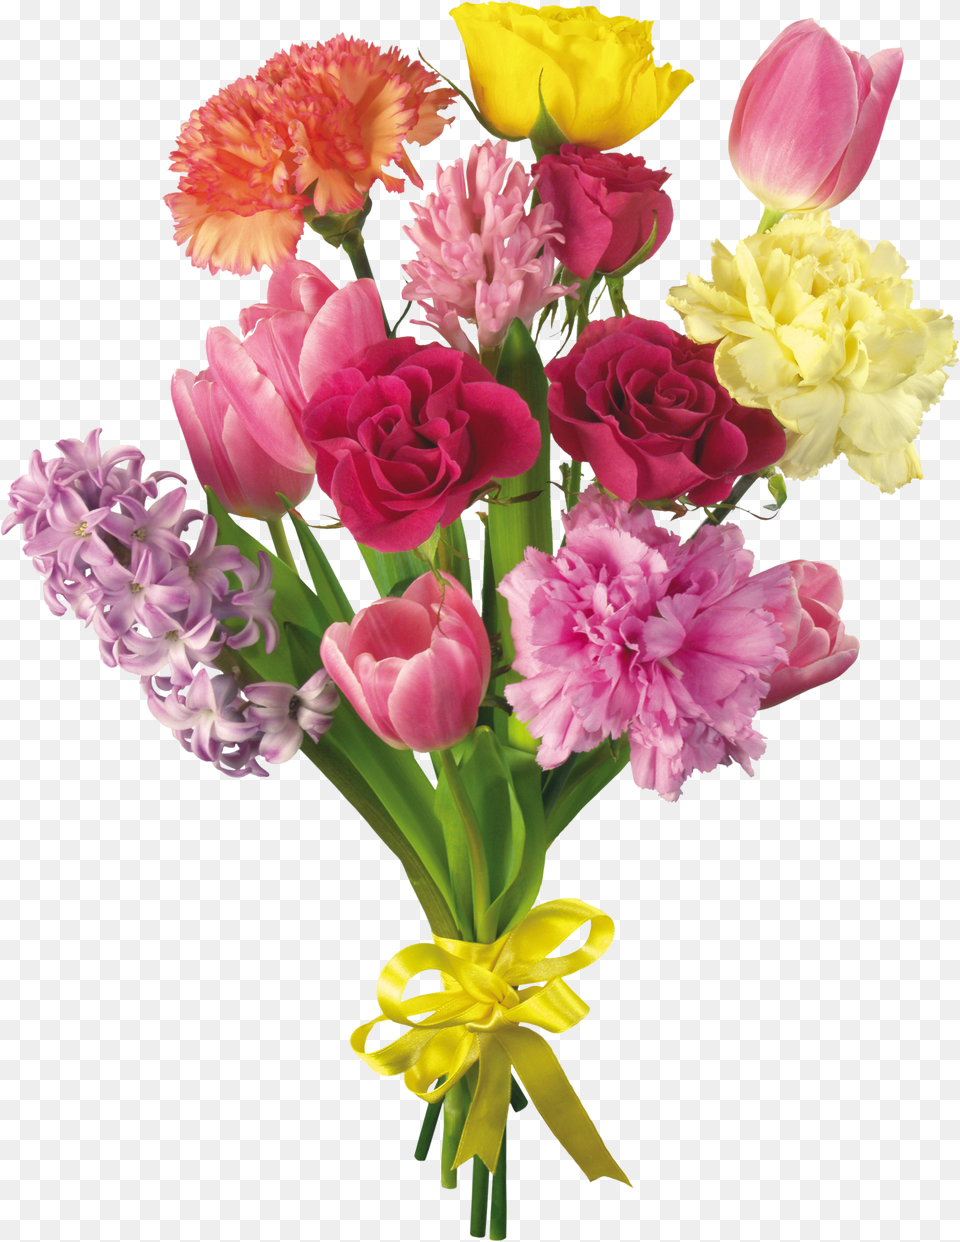 Flower Bouquet Desktop Wallpaper Carnation Tulip, Flower Arrangement, Flower Bouquet, Plant, Rose Free Transparent Png